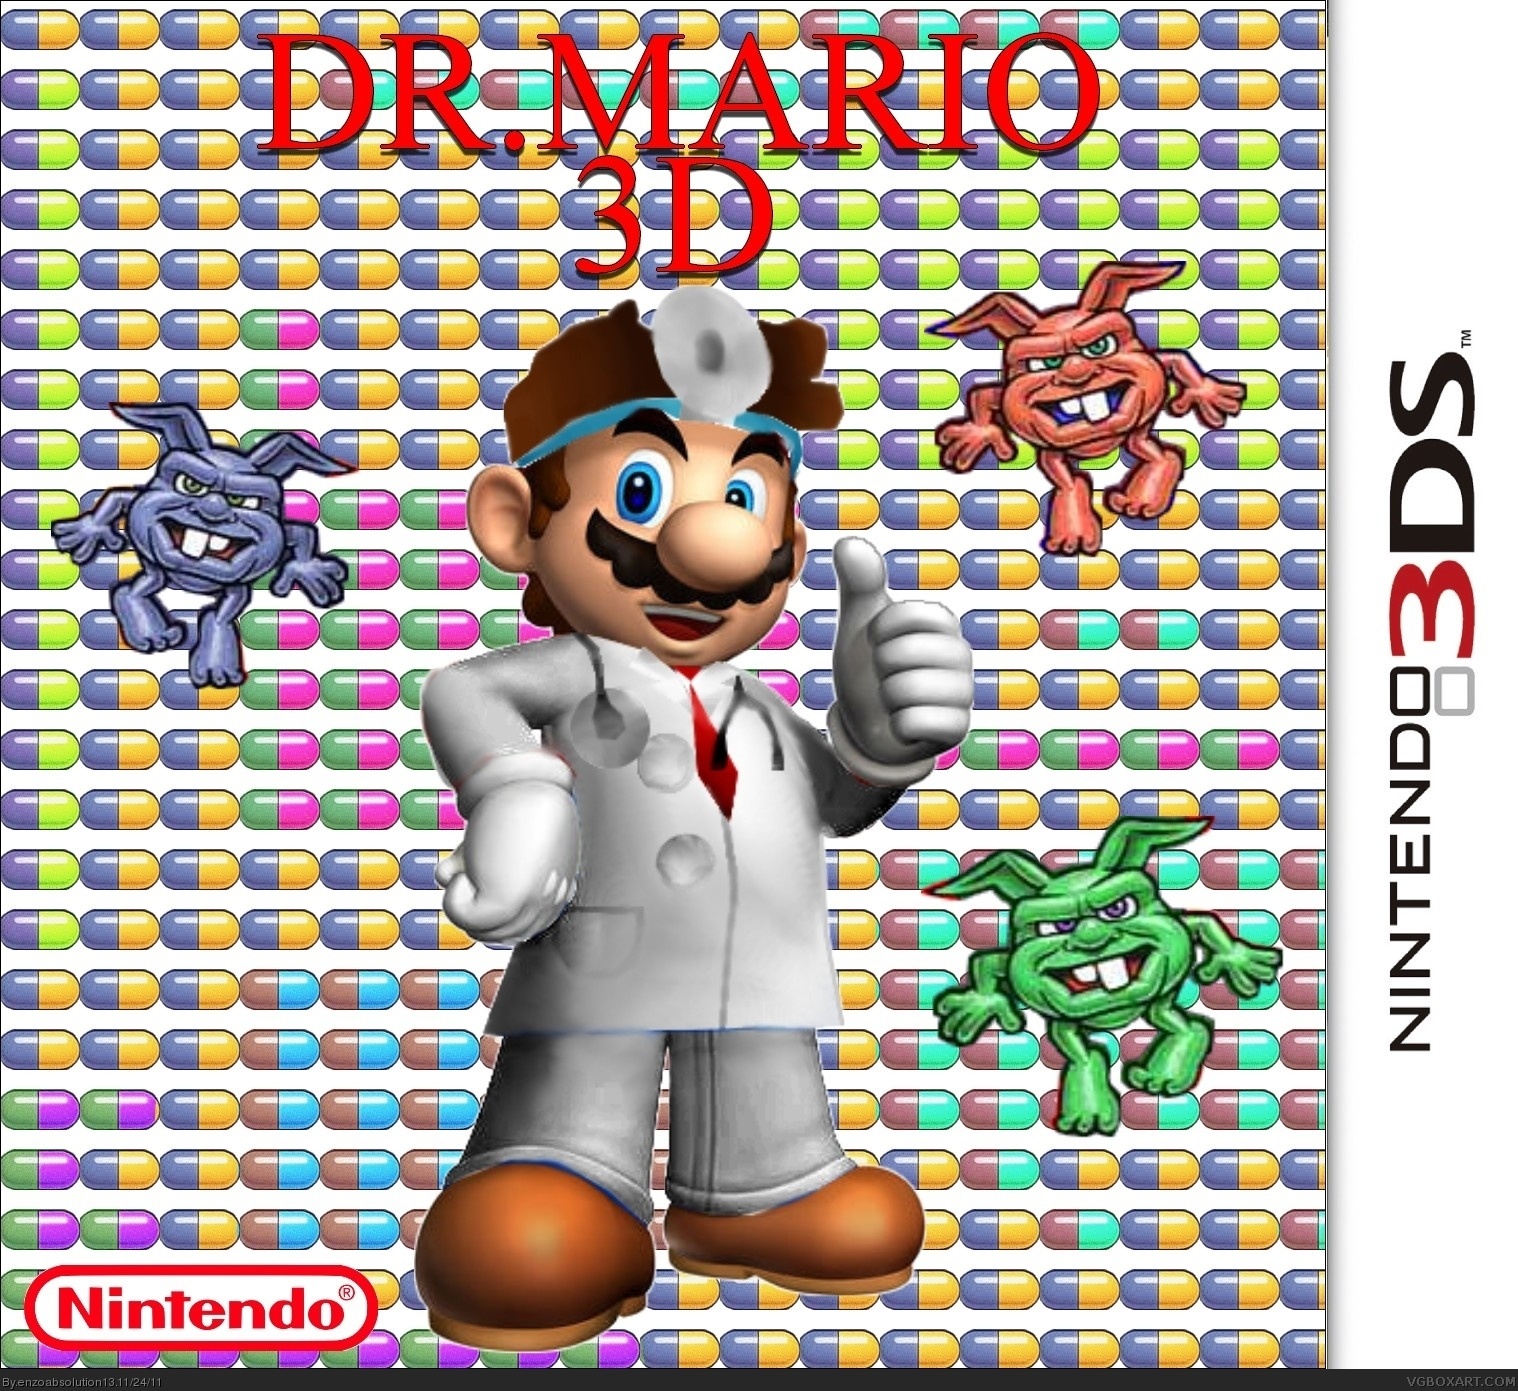 Dr. Mario box cover